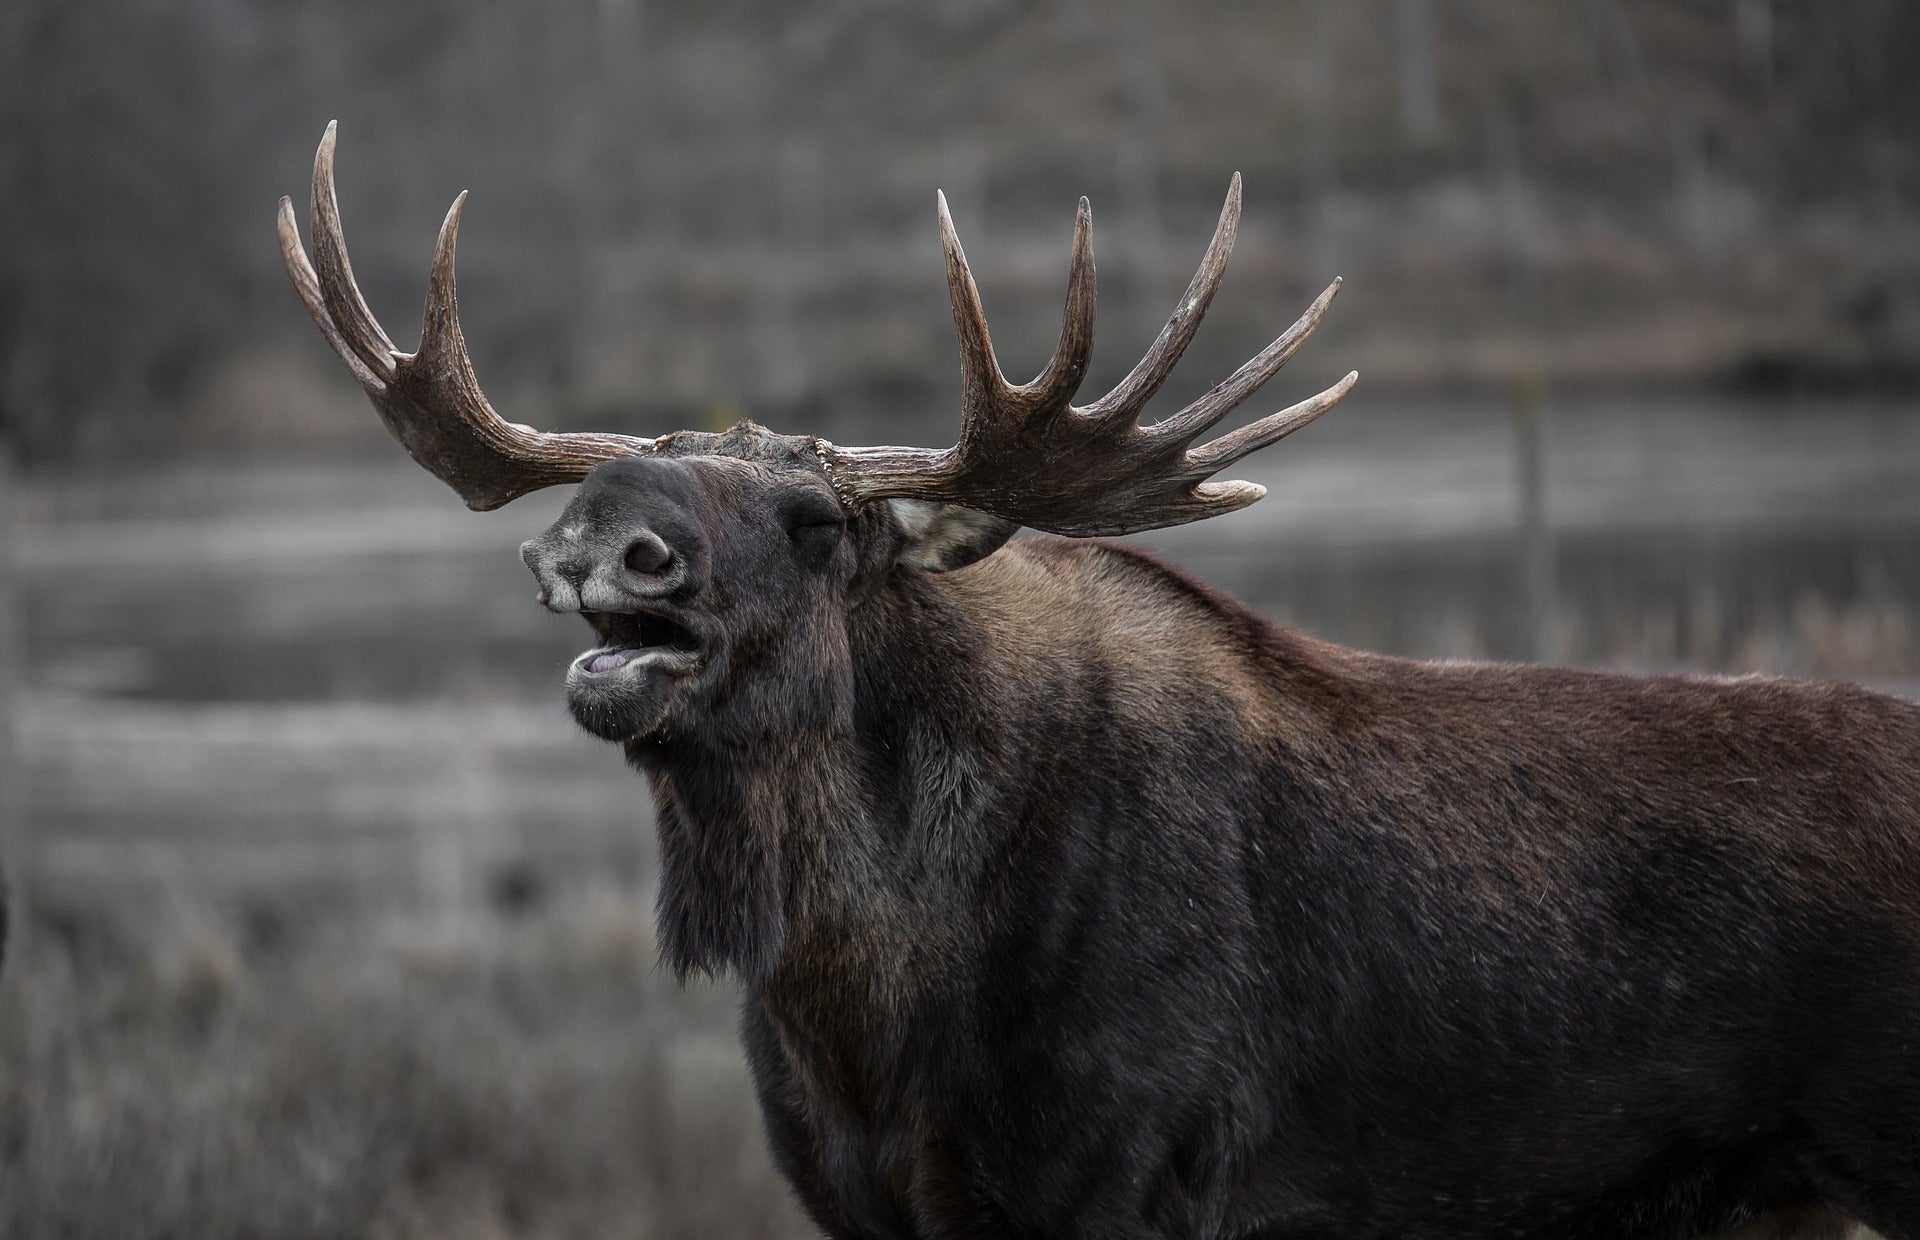 Moose hunting: bull moose calling.